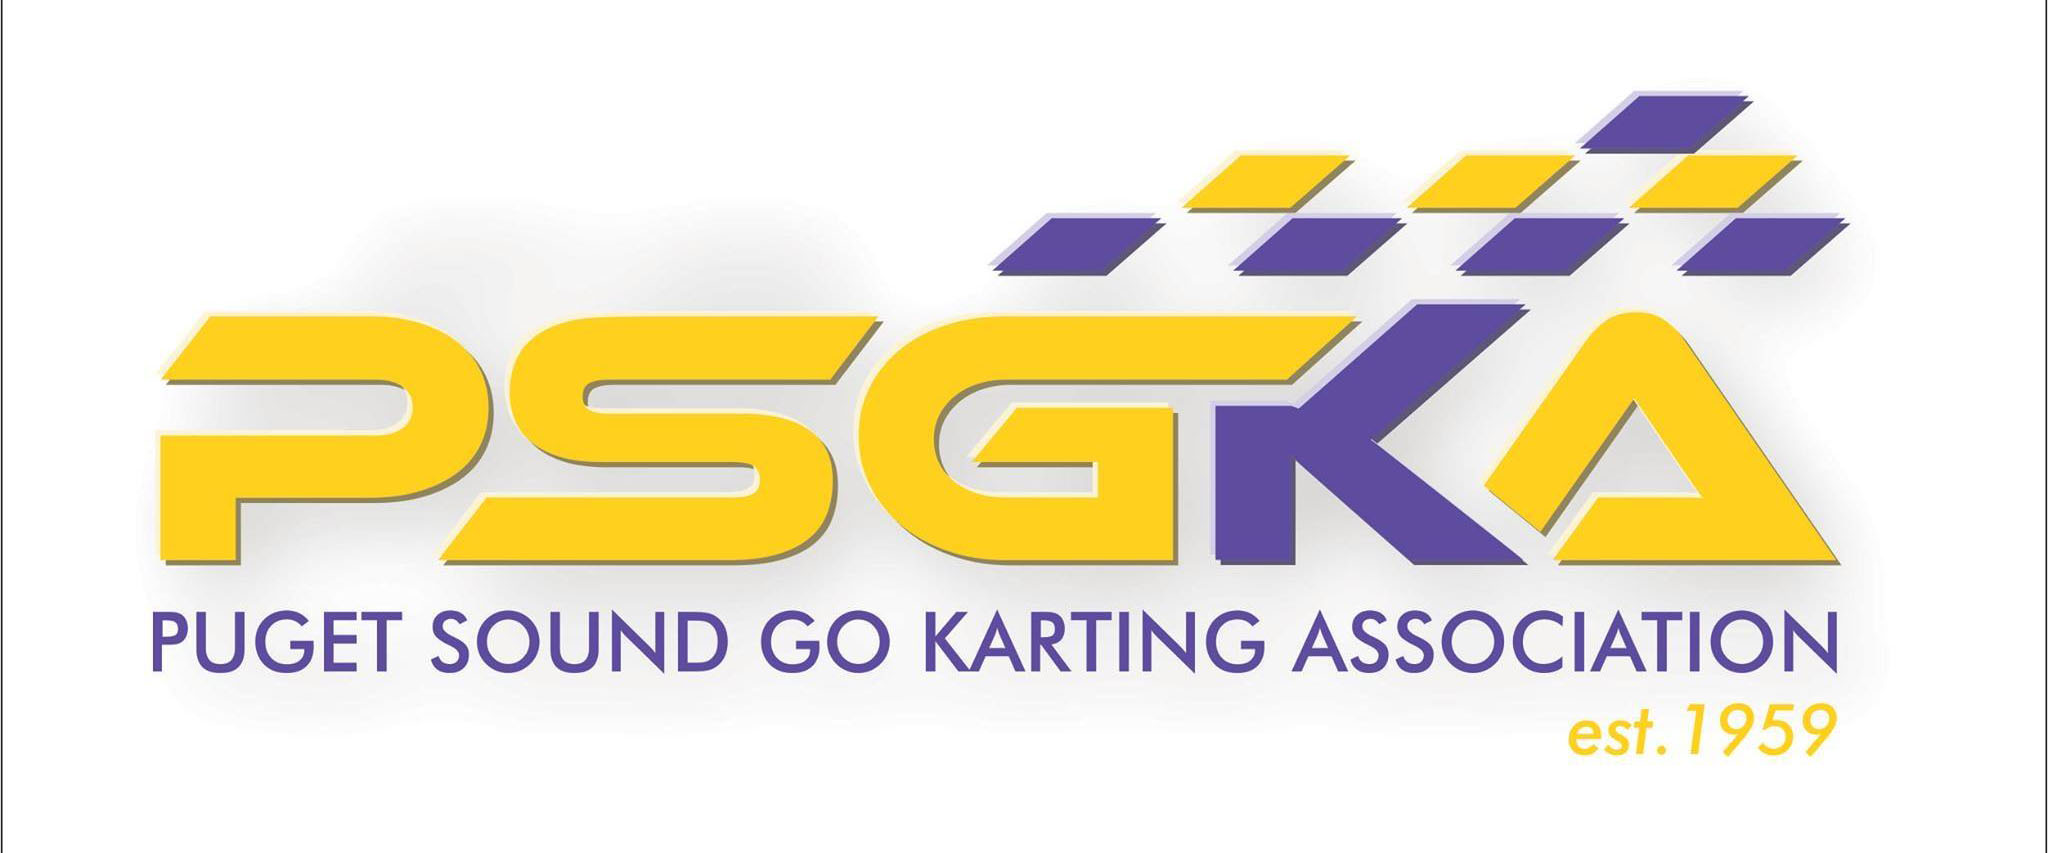 Puget Sound Go Kart Association Logo